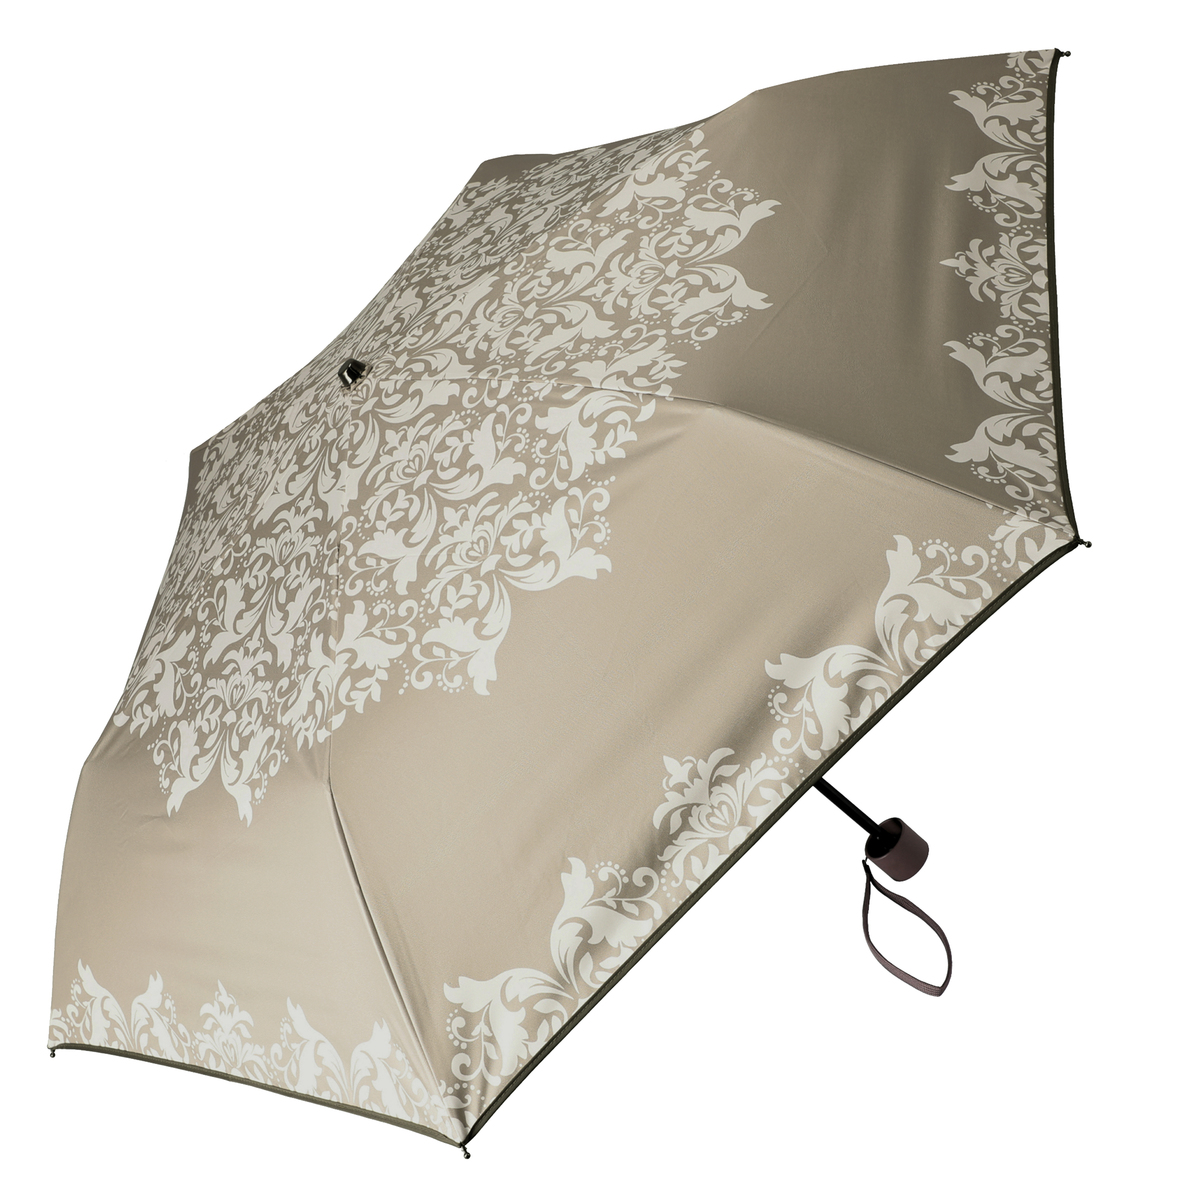  ルナジュメール UV+1級遮光+晴雨兼用 ダマスク柄折傘  モカ